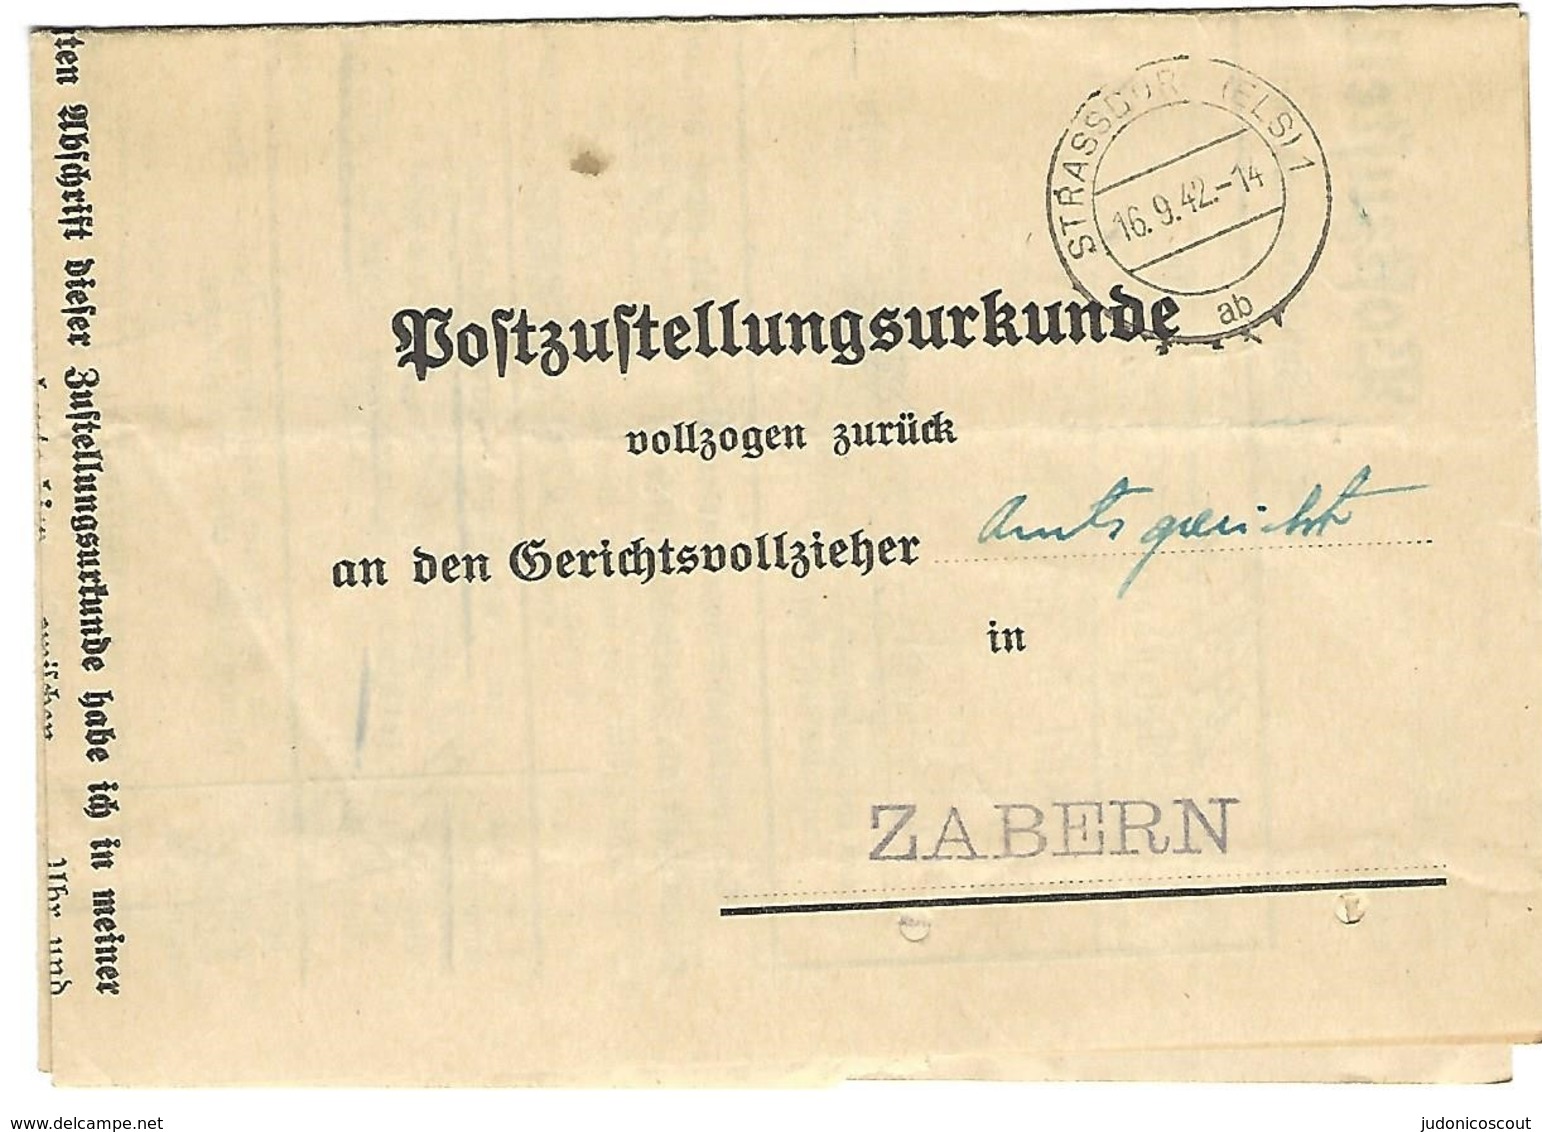 STRASSBURG (Els) 1 Ab - 16.9.1942 - Certificat De Remise (Poststellungsurkunde) En Franchise - Lettres & Documents